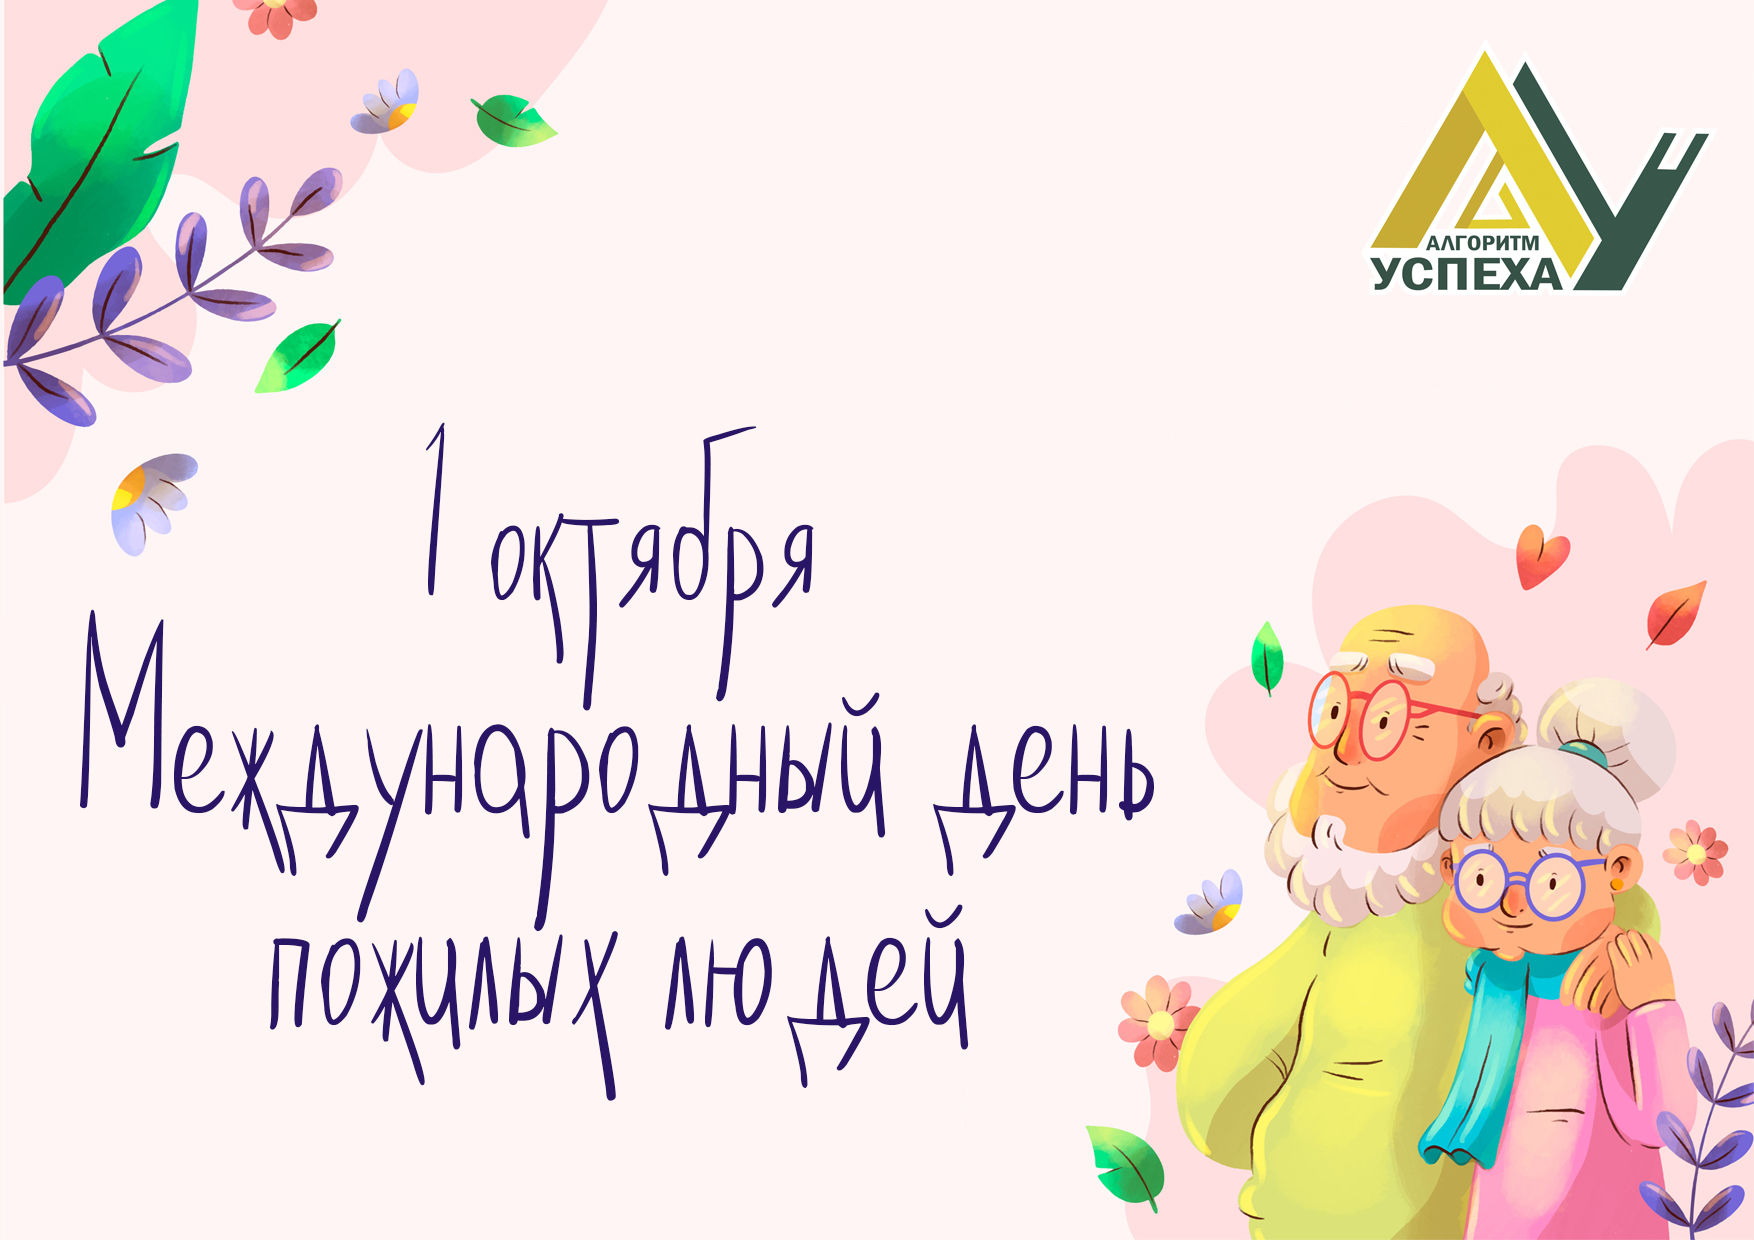 1 октября - Международный день пожилых людей.